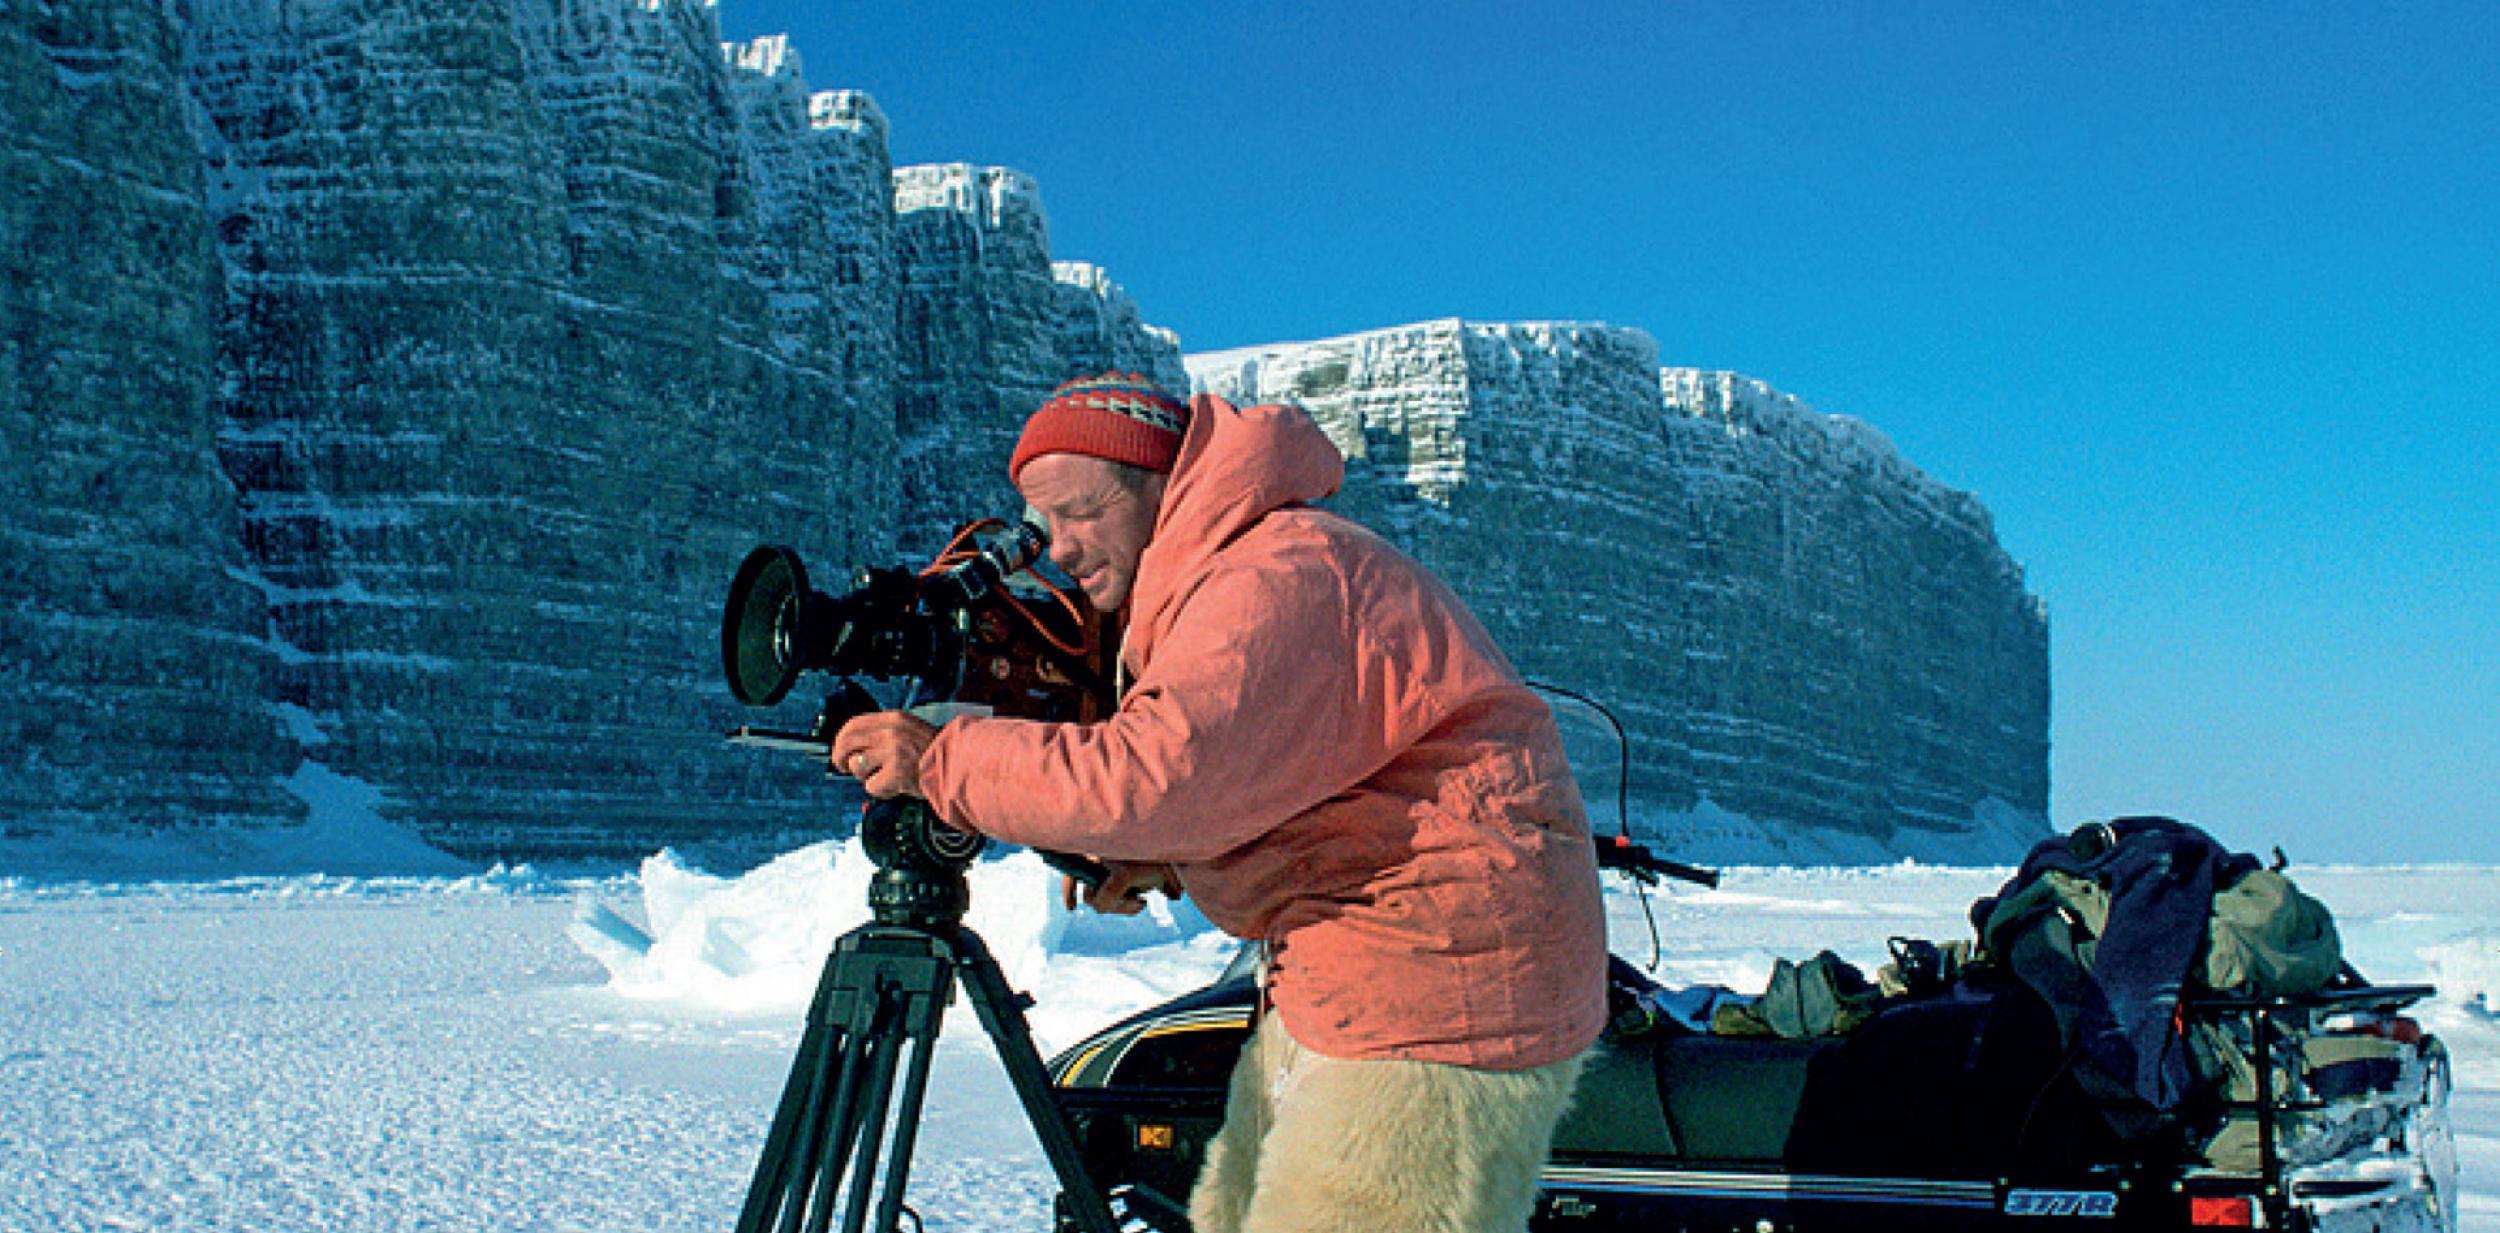 Doug Allen using a film camera